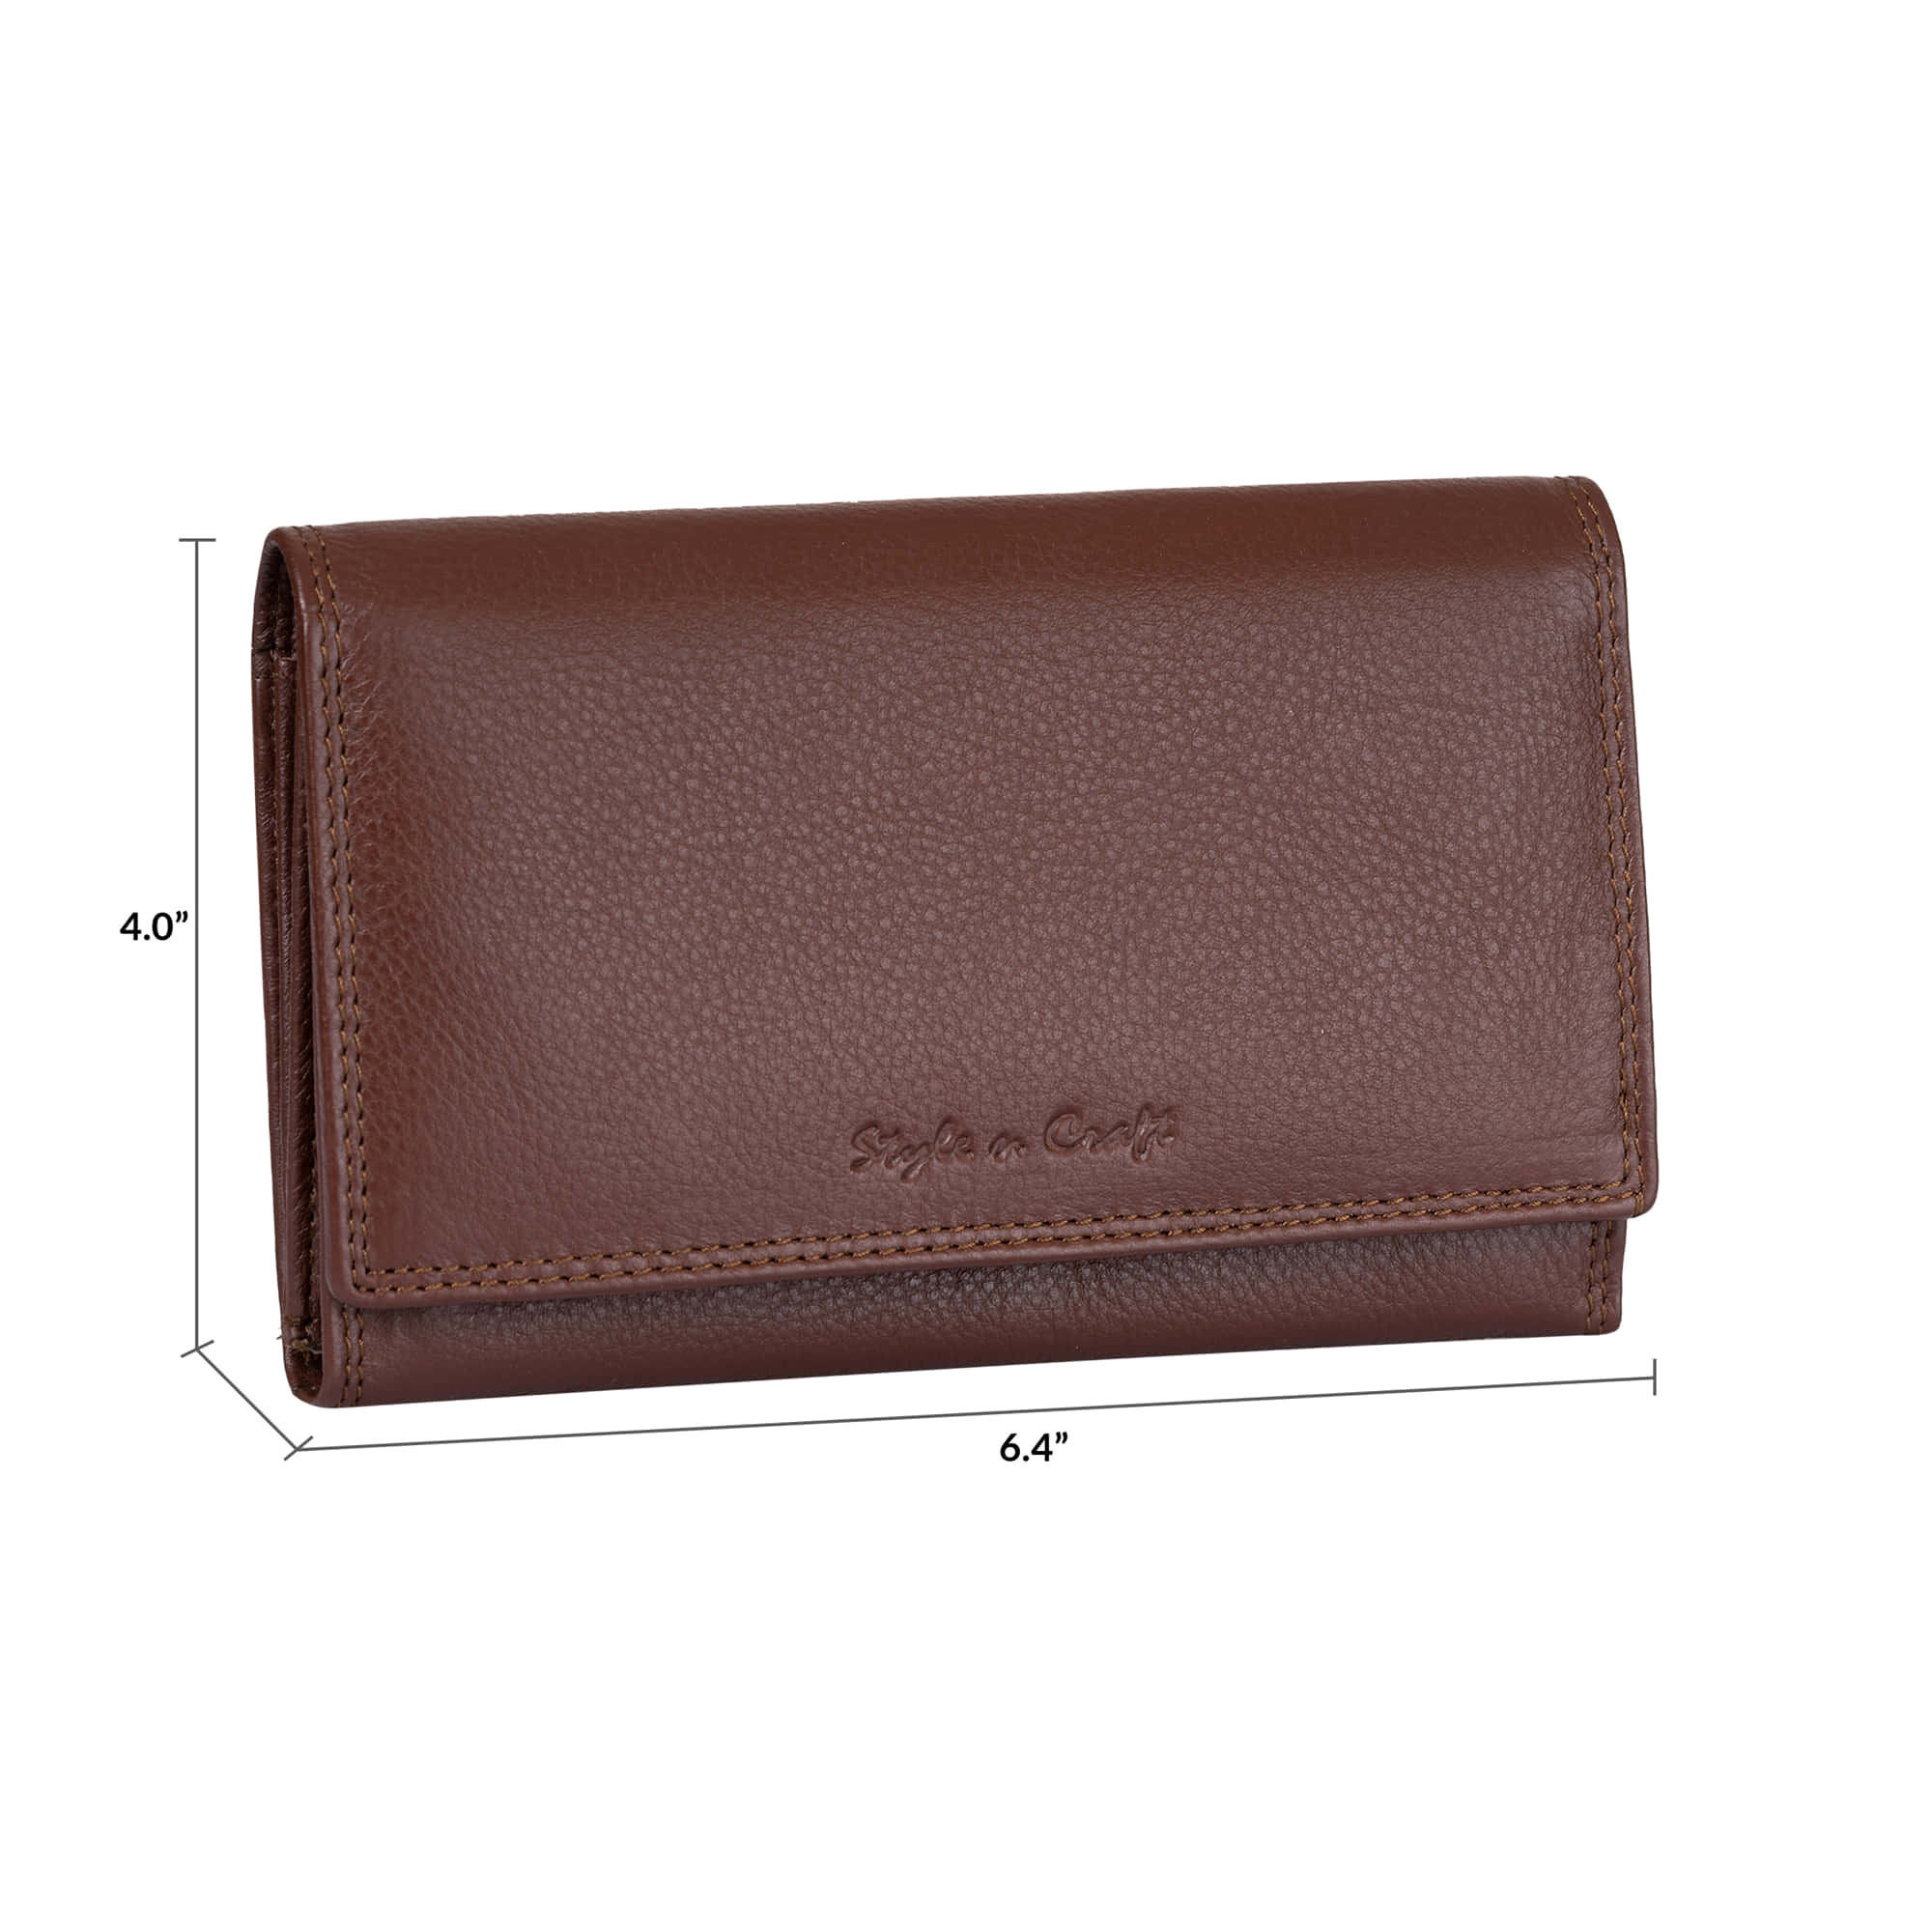 Ladies Clutch Wallet in Brown Full Grain Leather | Style n Craft | #391102